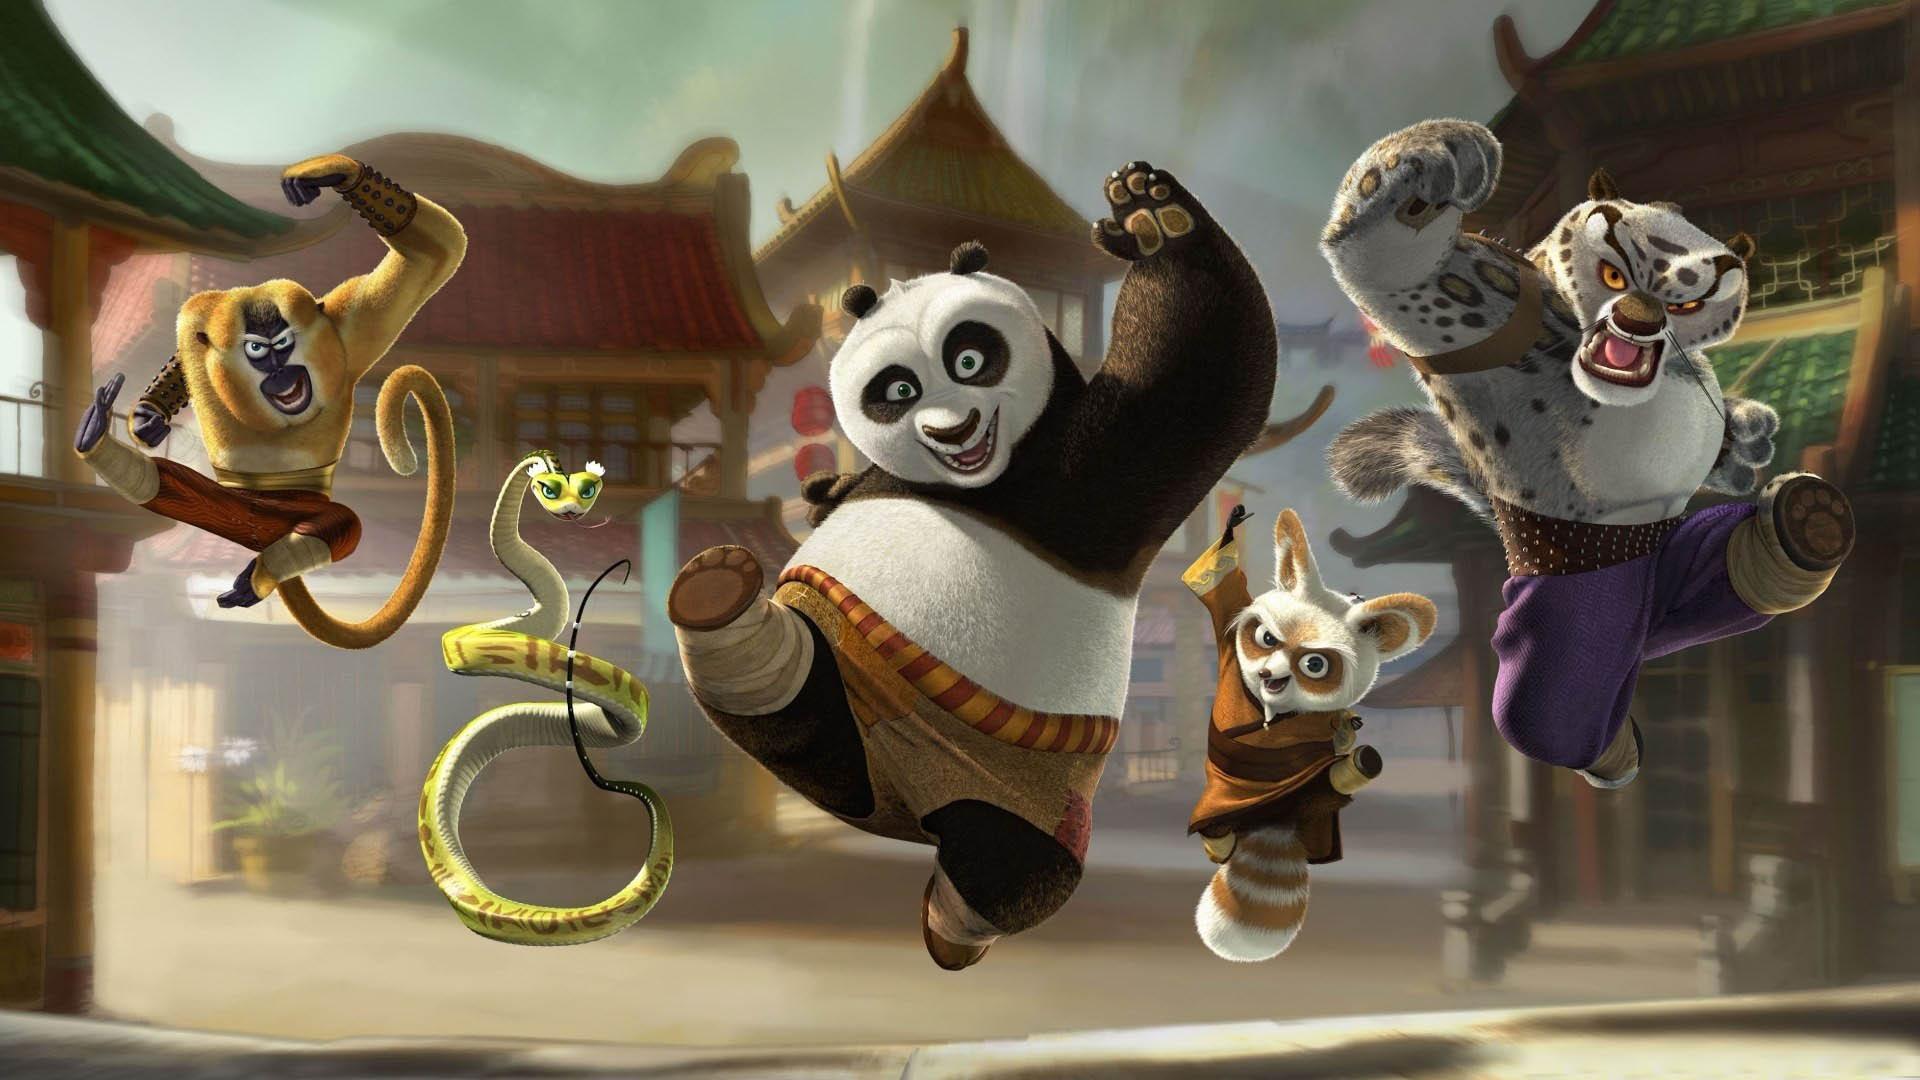 download wallpaper: Kungfu panda wallpaper